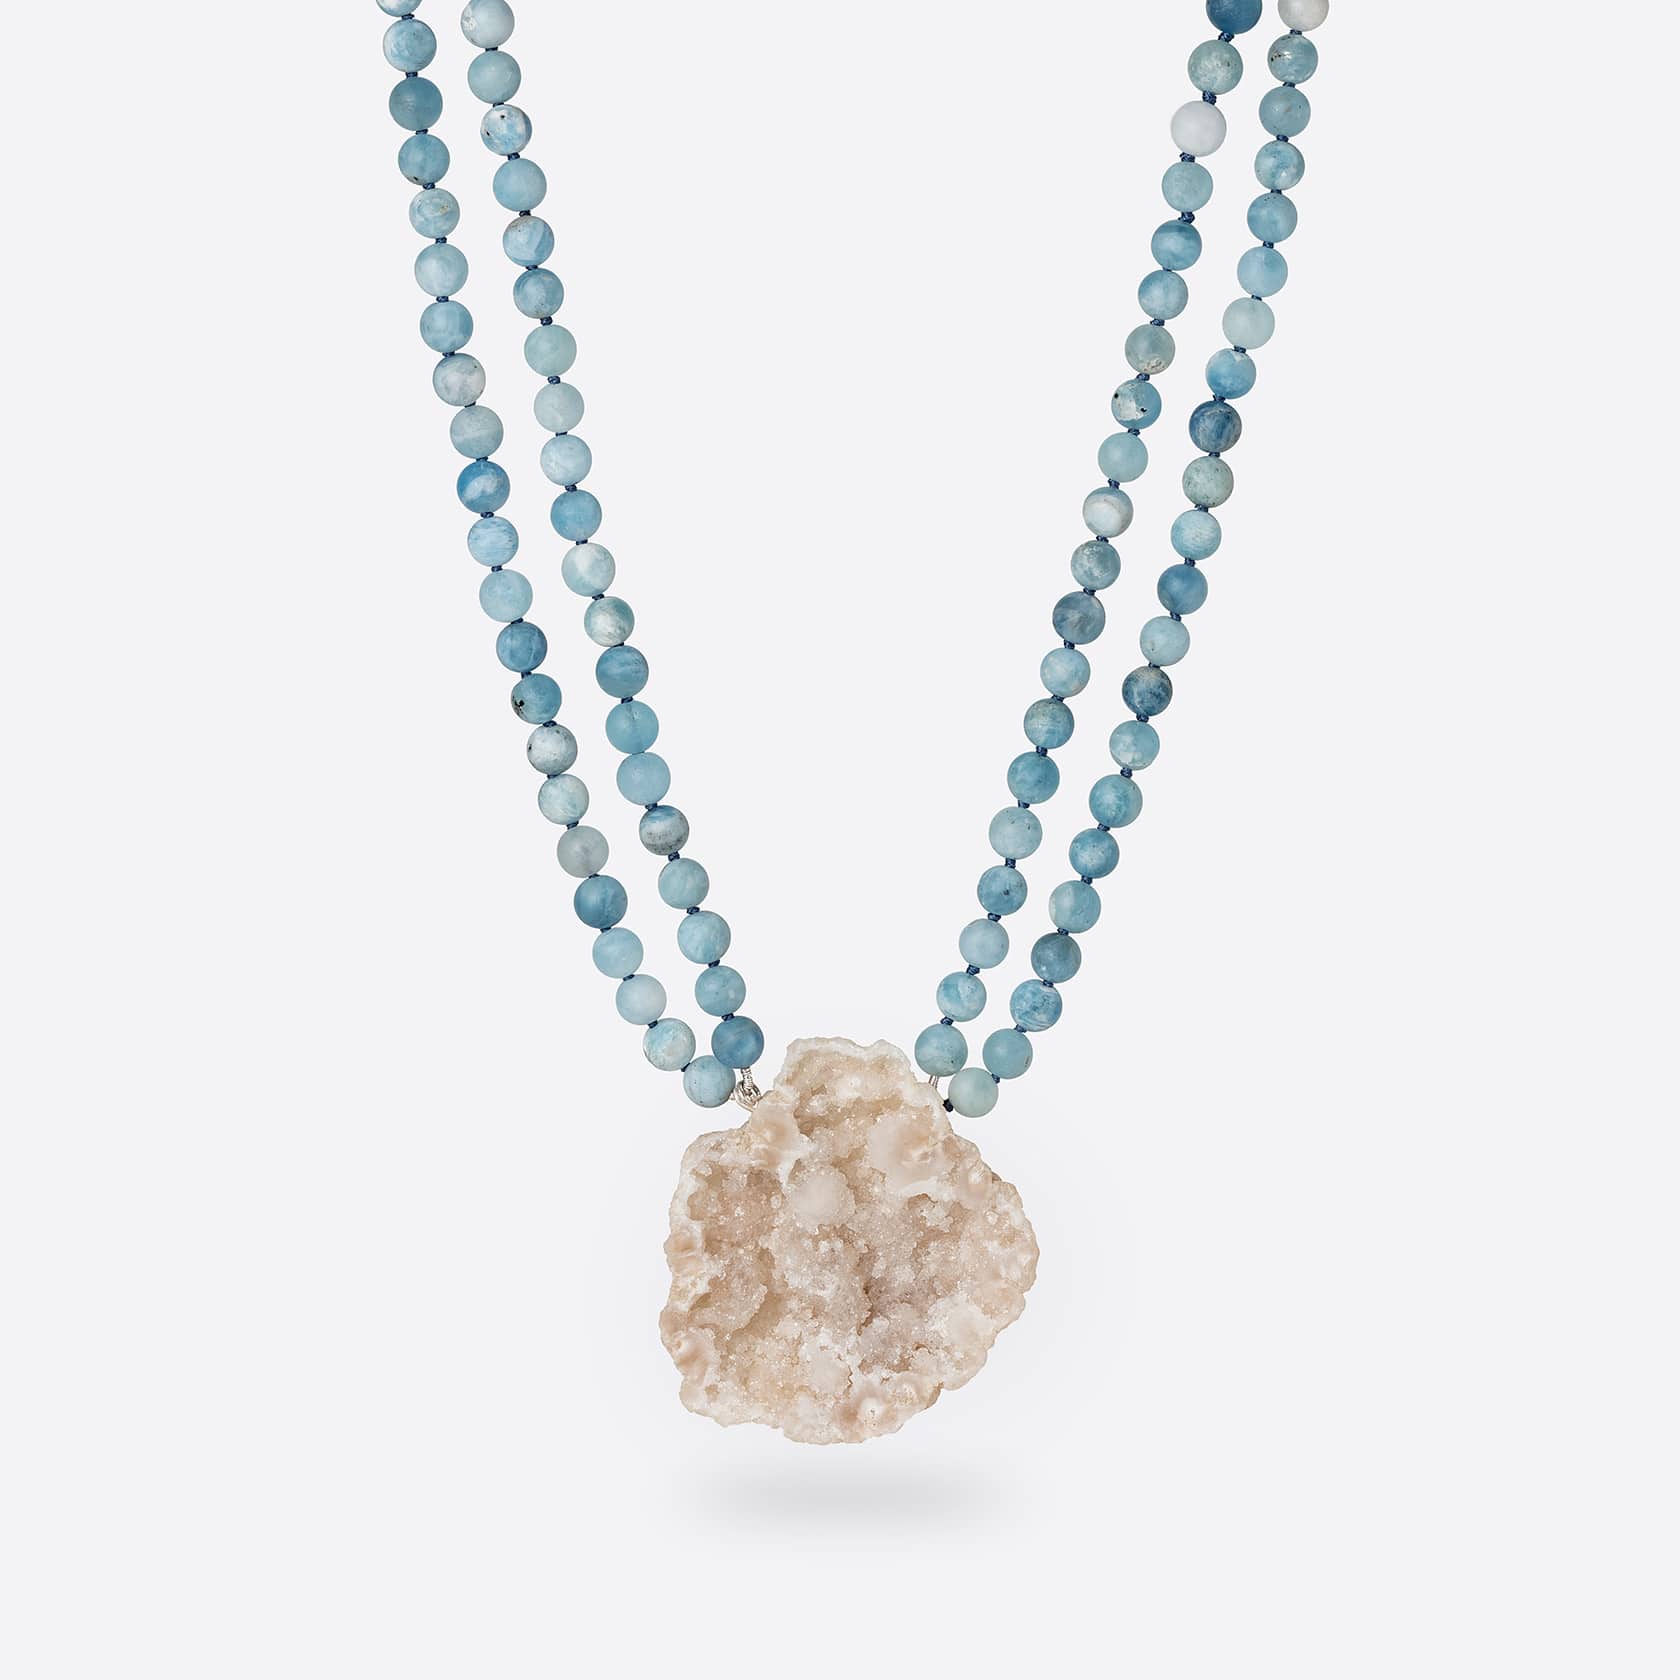 Agate aquamarine necklace